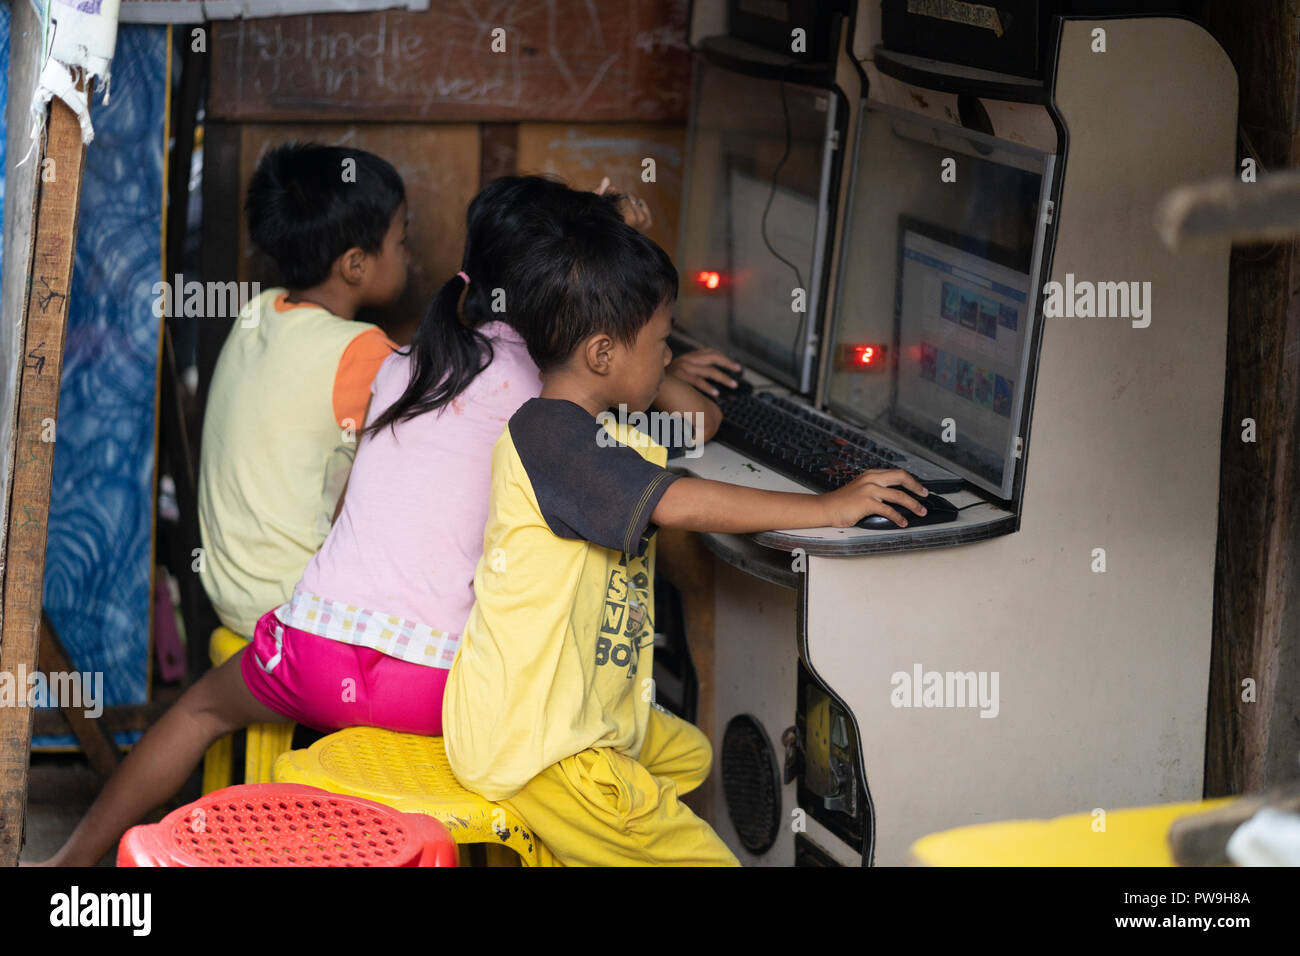 Image der jungen philippinischen Kindern den Zugang zum Internet über kleine Stände in einem slumgebiet, Cebu City, Philippinen. Stockfoto